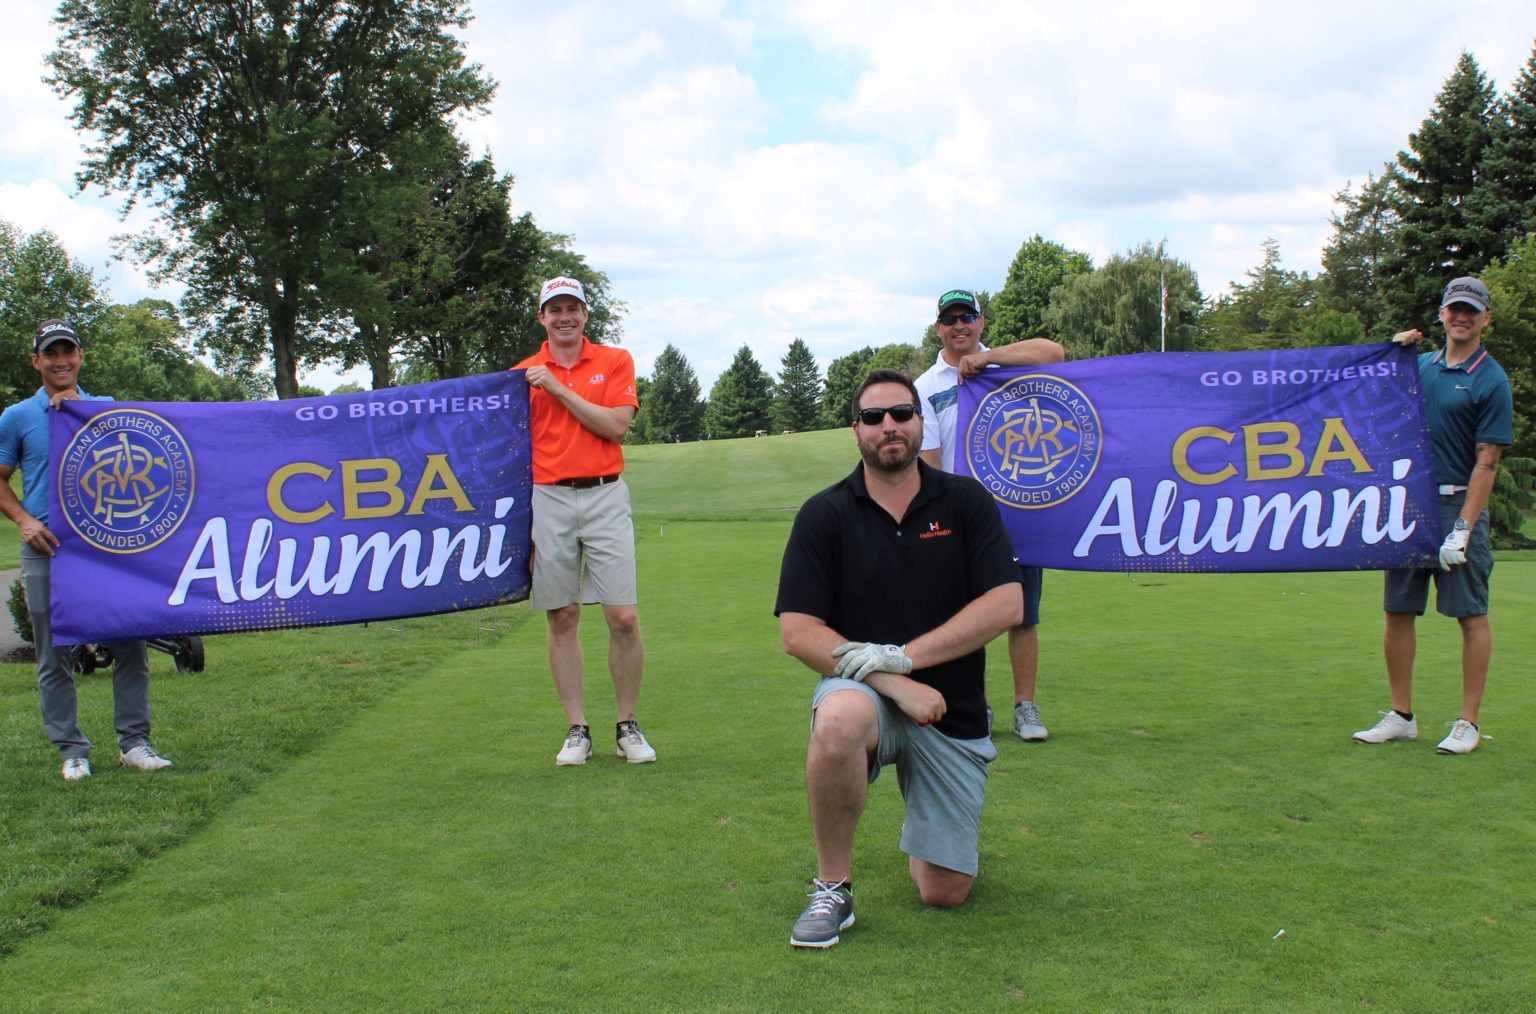 30th Annual “School’s Out” CBA Alumni Golf Tournament